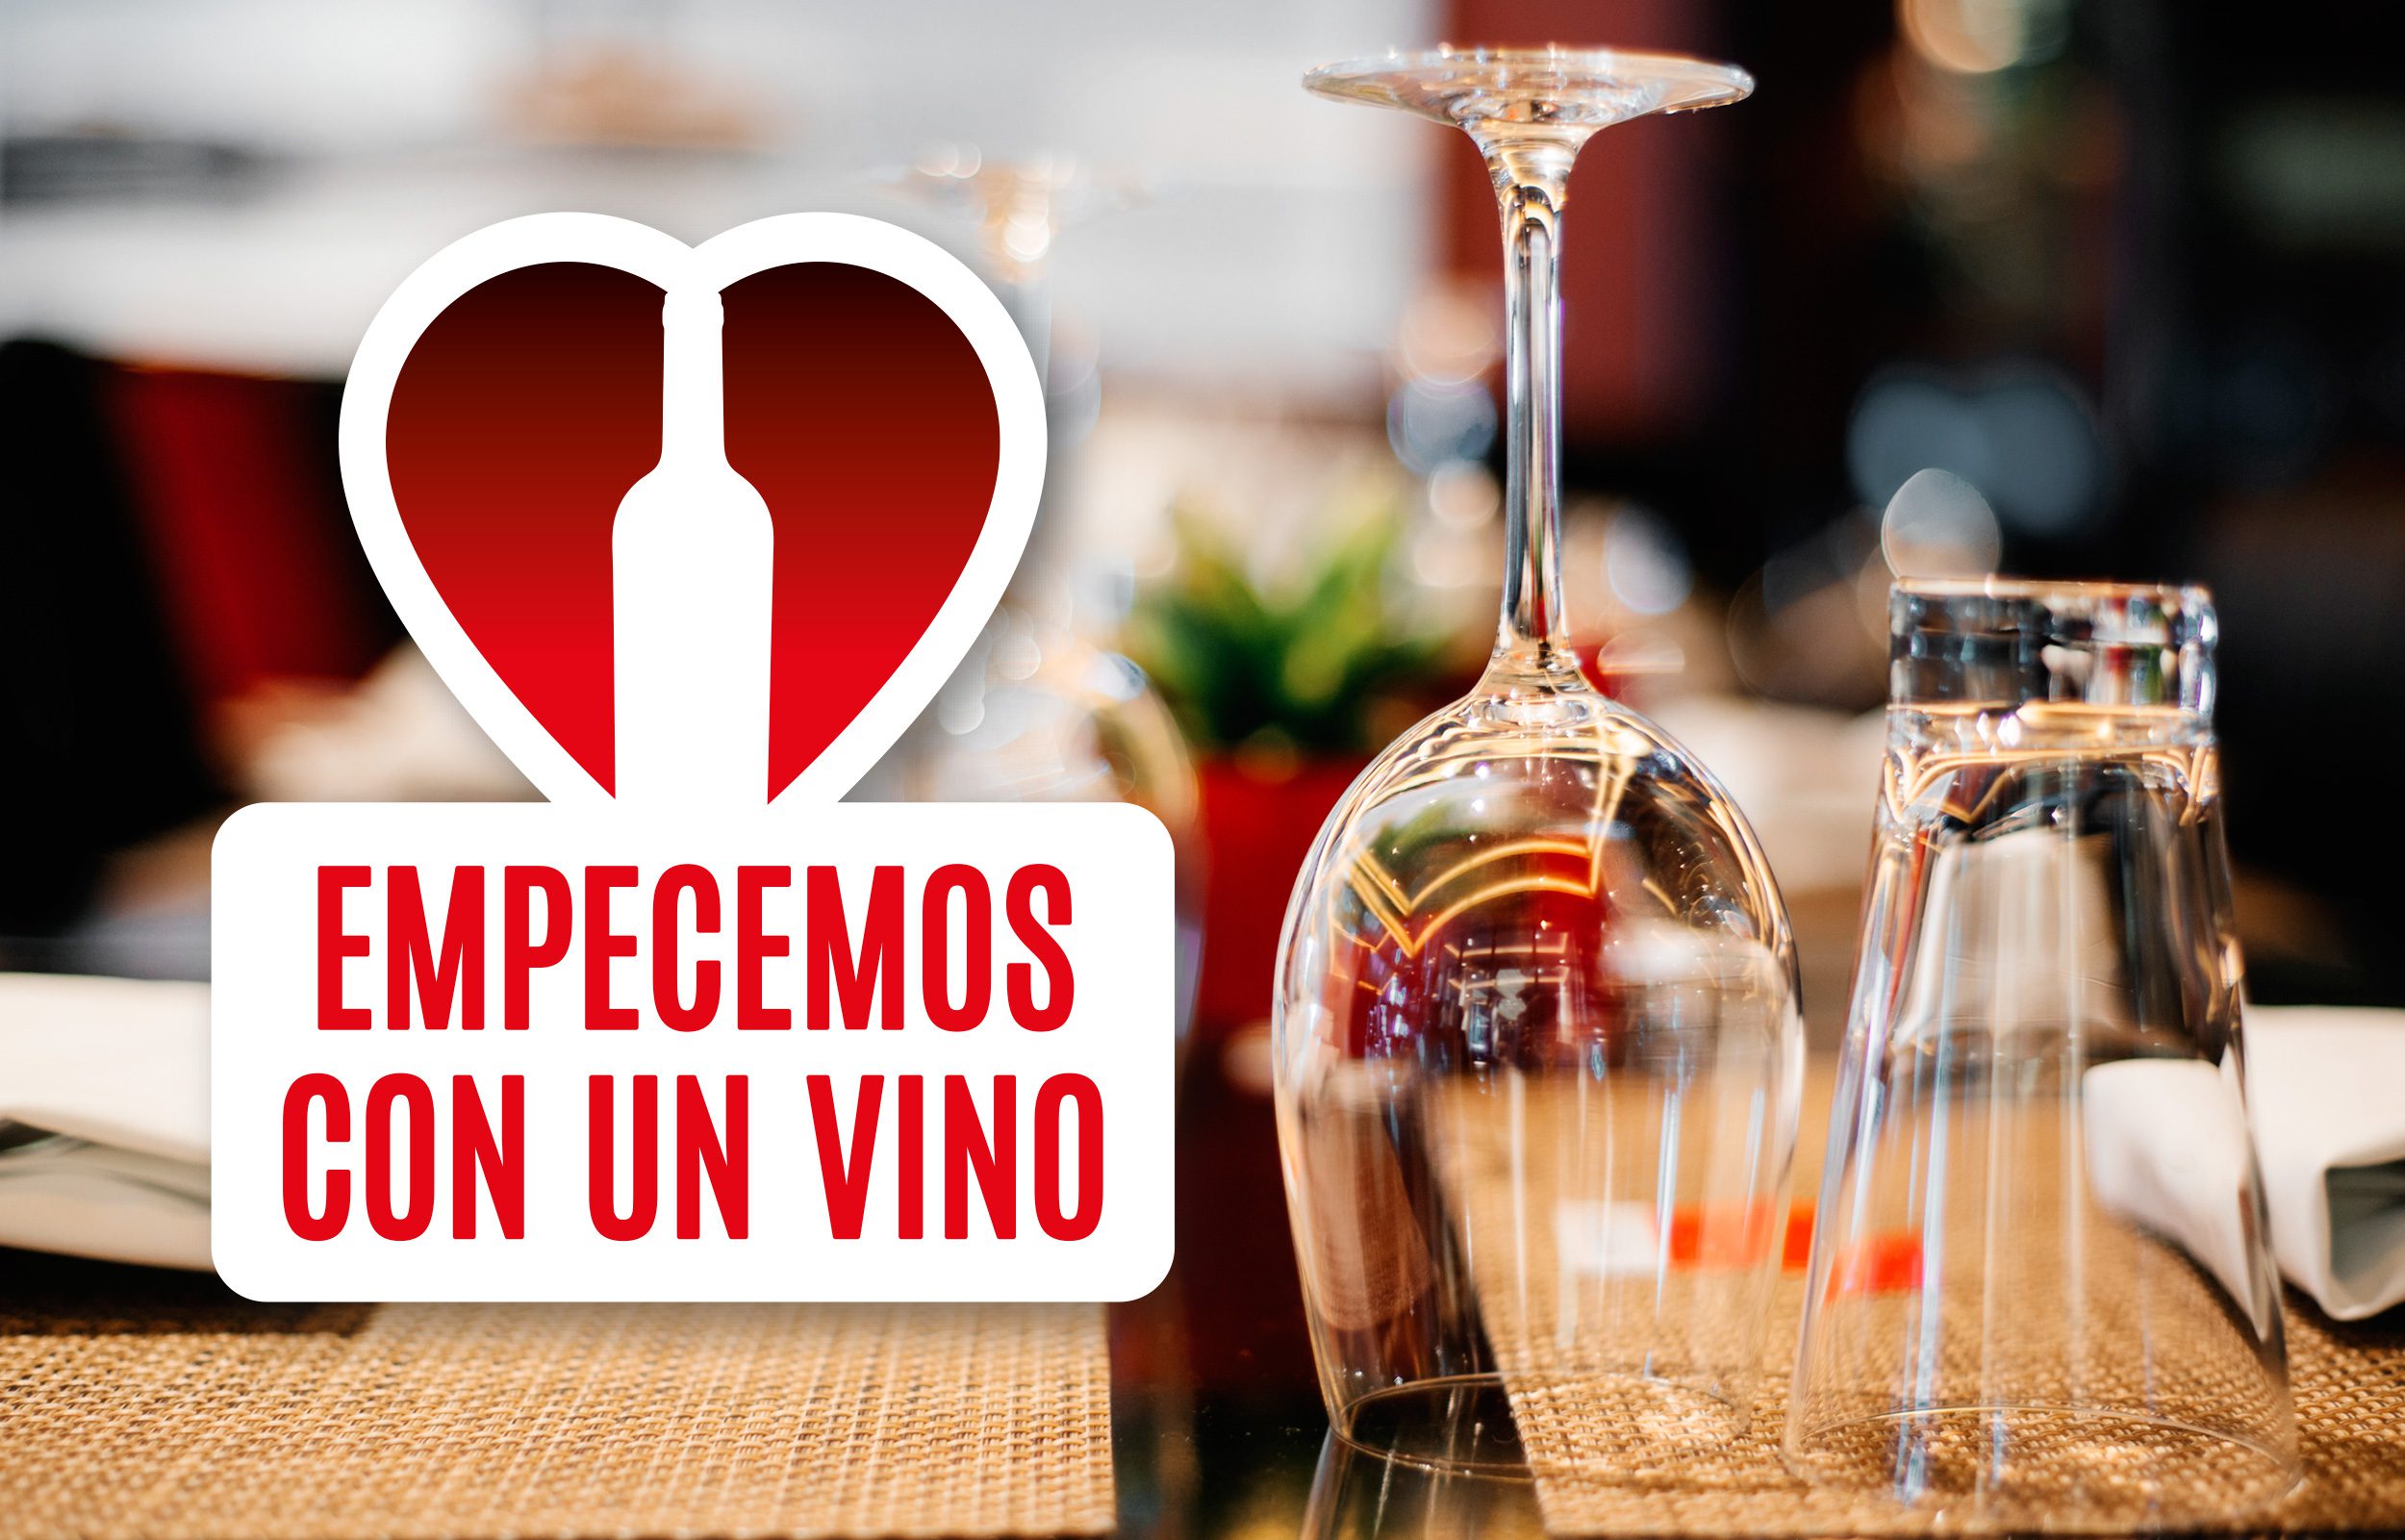 La empresa Bodegas Viña Elena apoya a los hosteleros con la campaña “Empecemos con un vino”